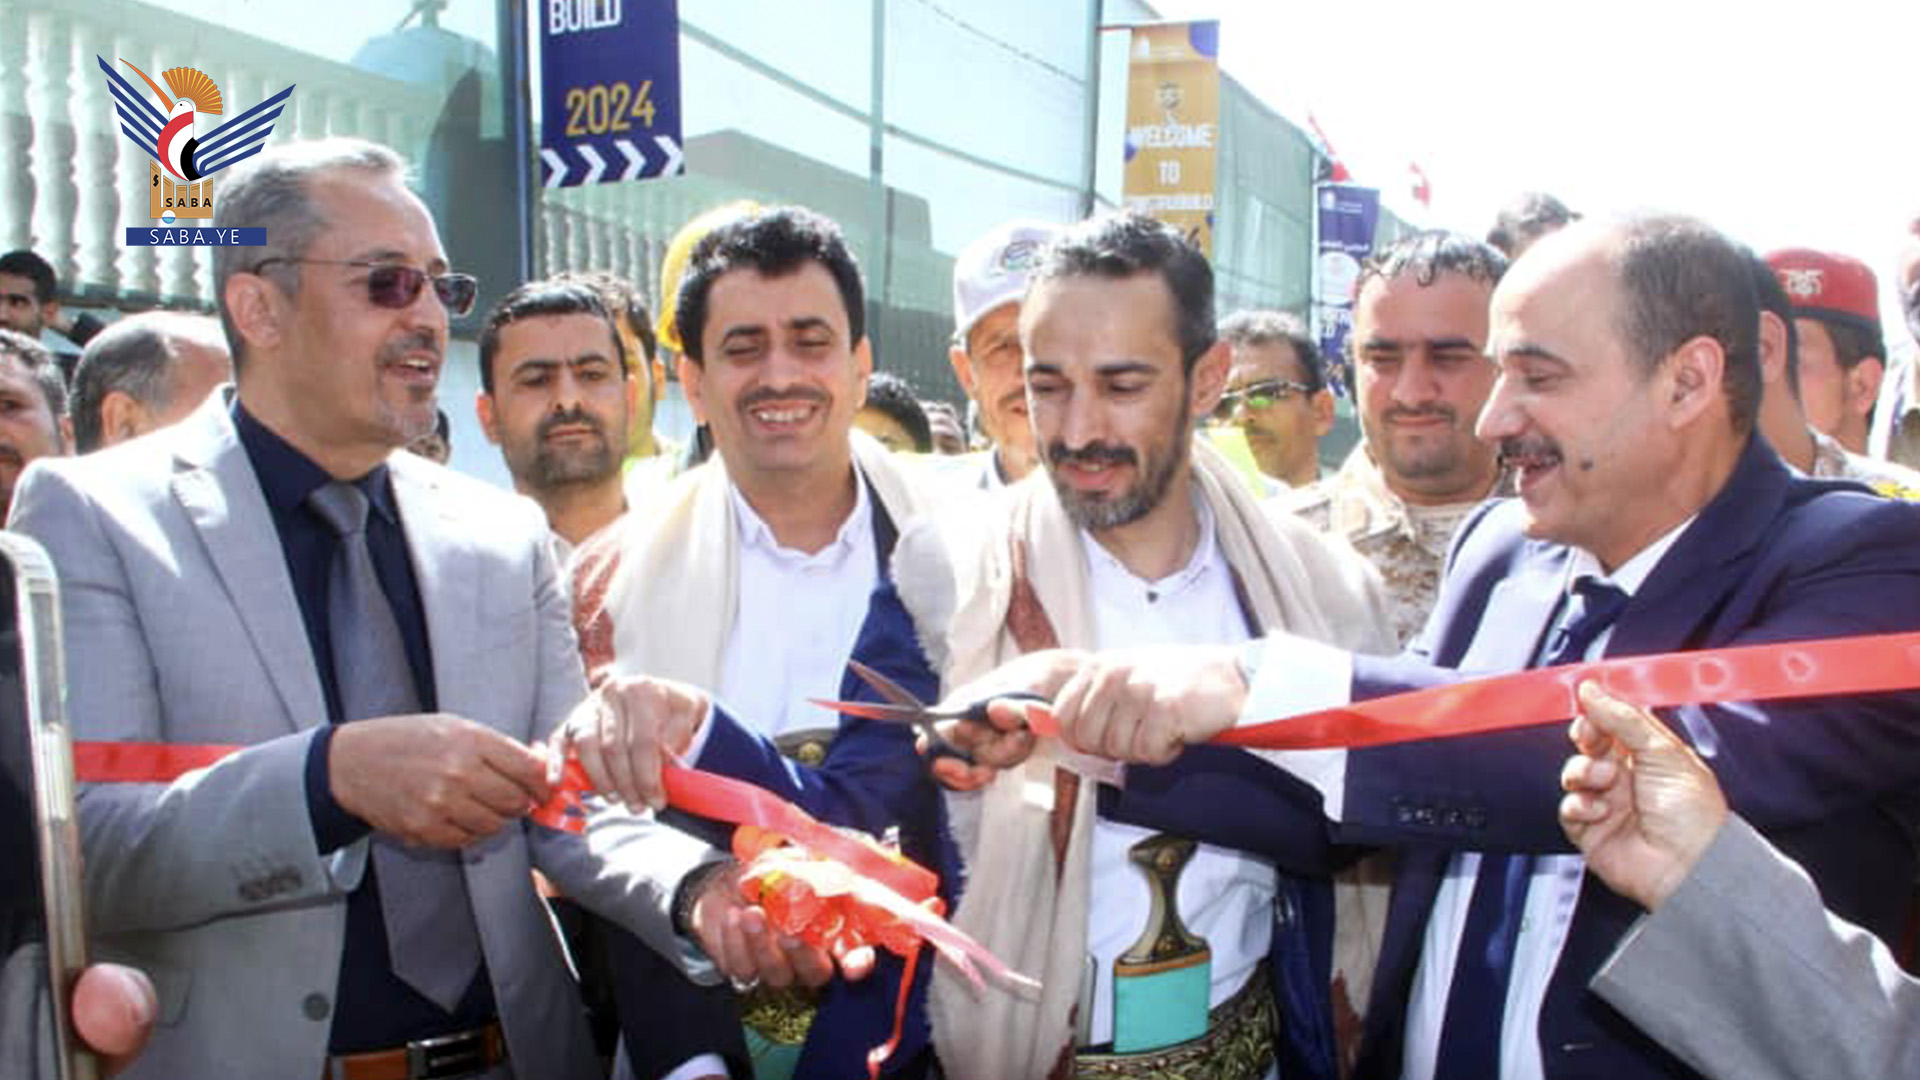 افتتاح معرض البناء والإنشاءات الثالث بصنعاء